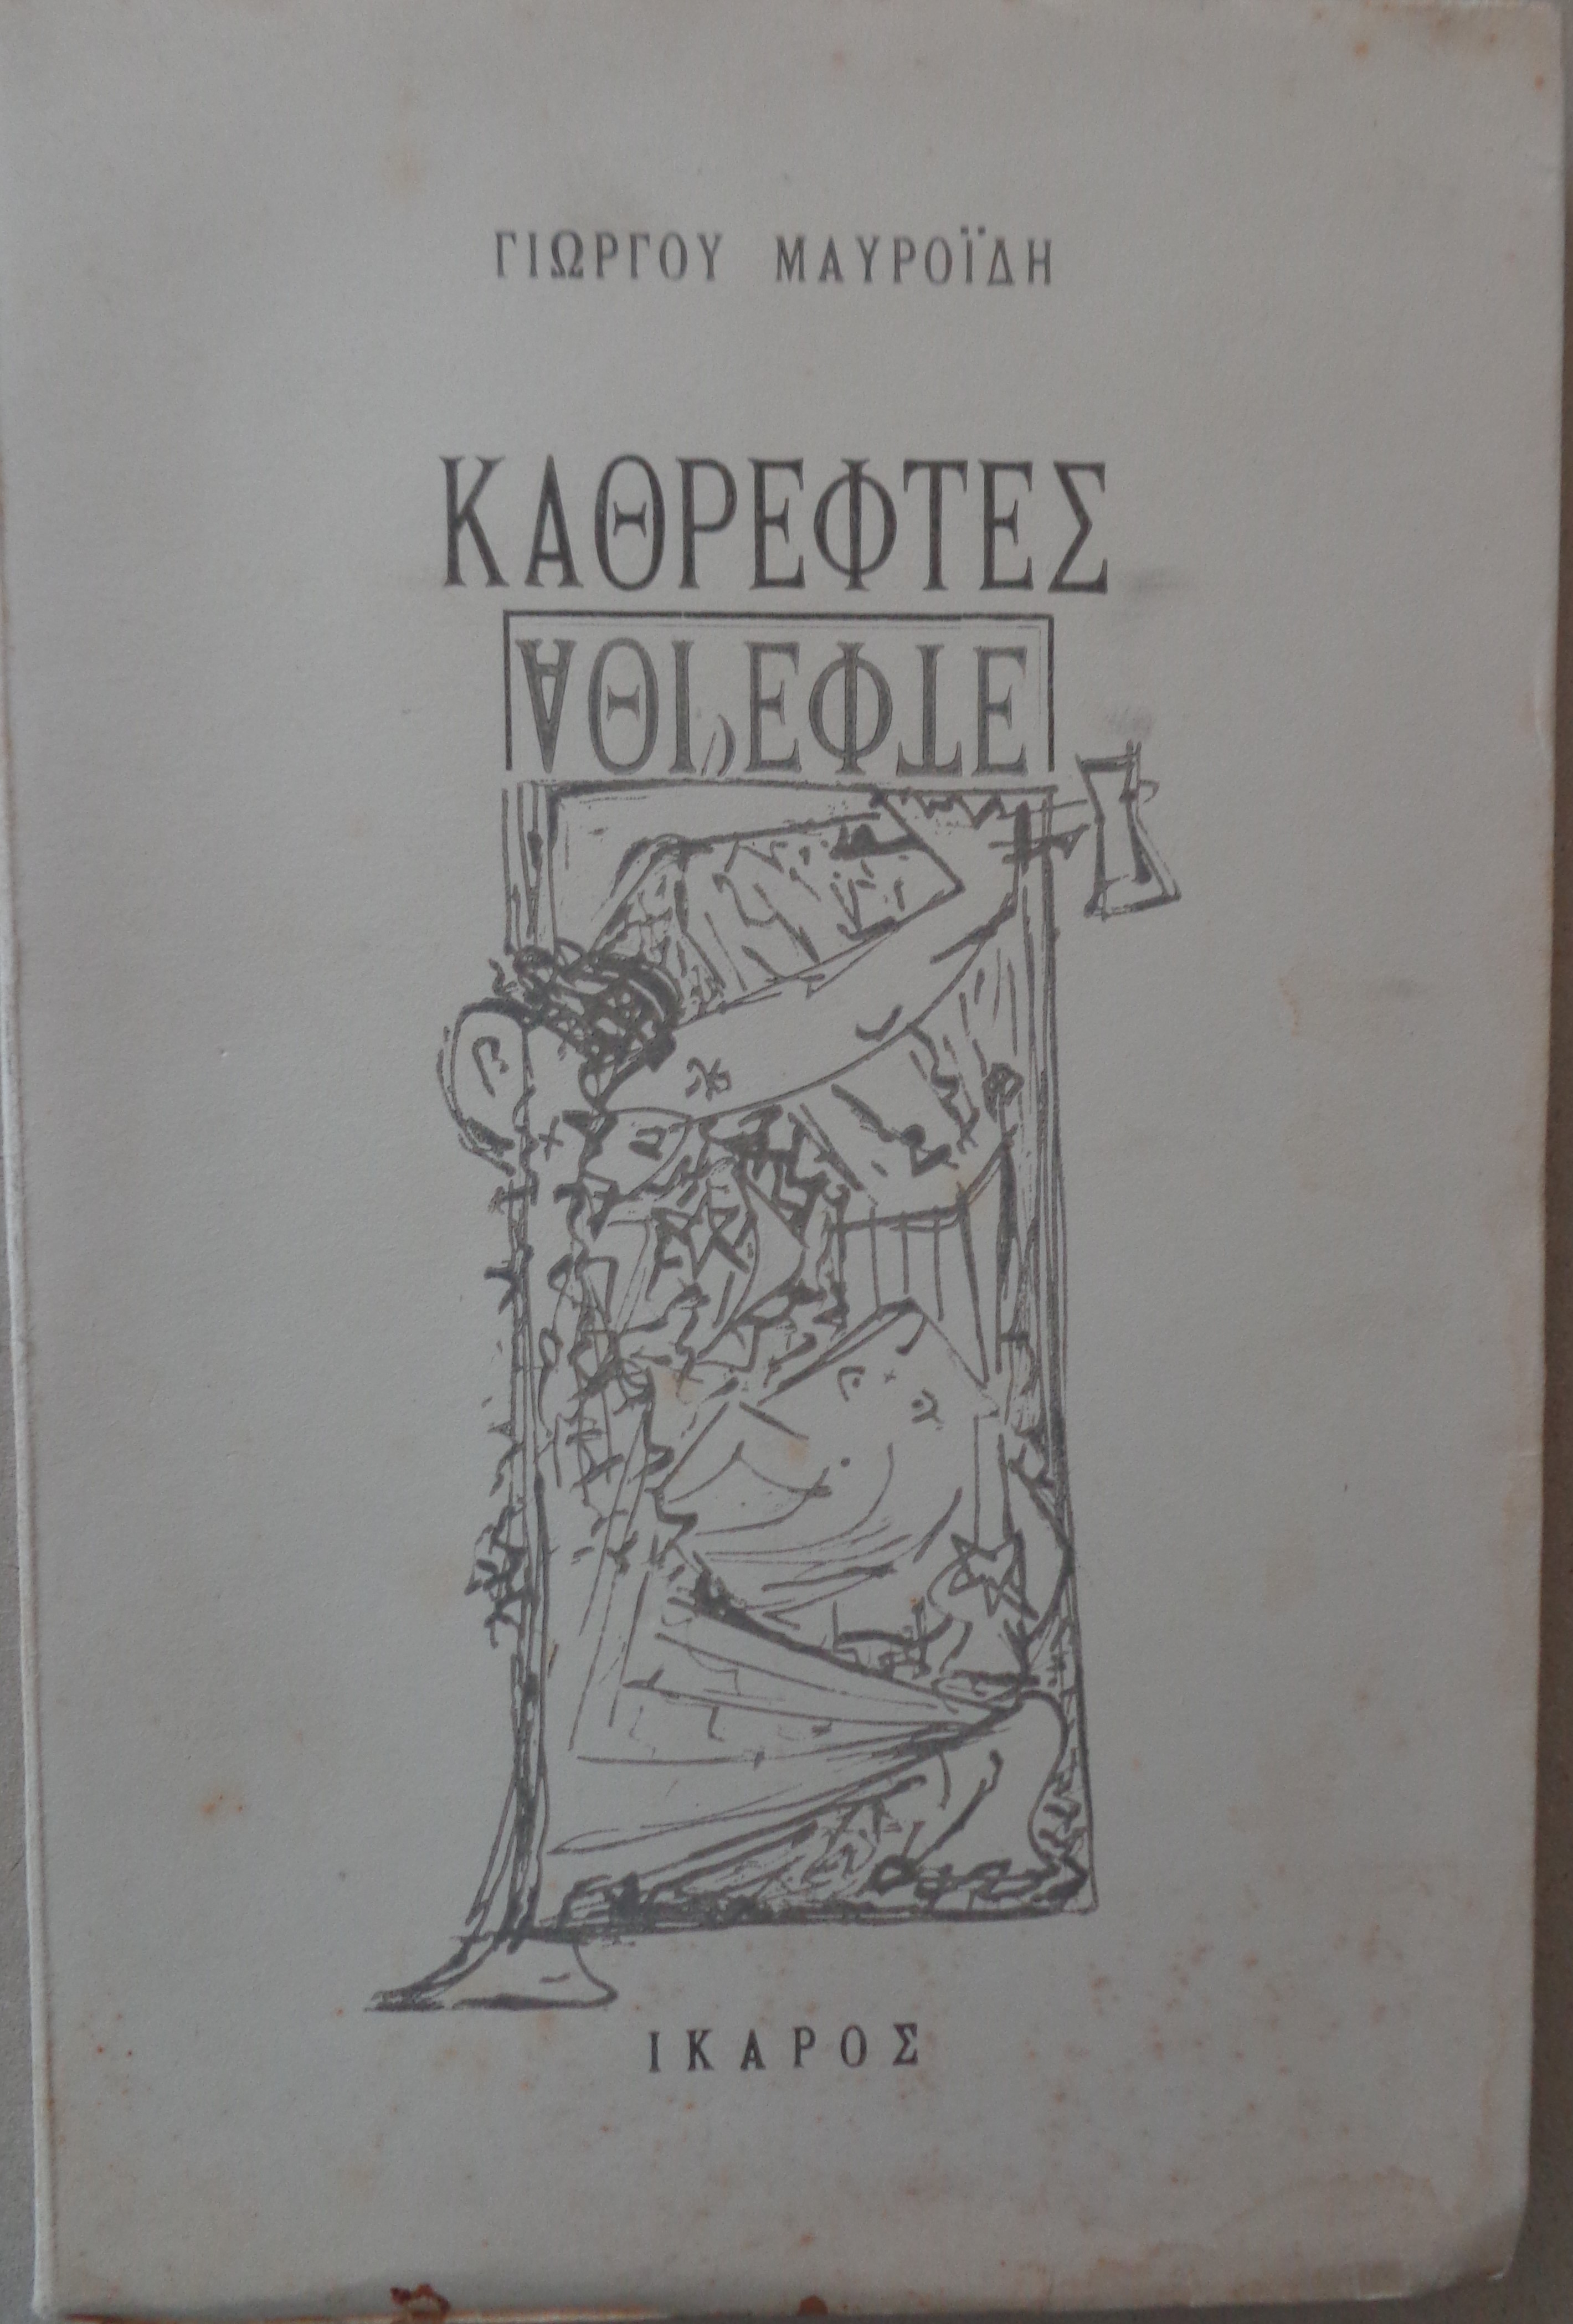 ΓΙΩΡΓΟΣ ΜΑΥΡΟΪΔΗΣ  Καθρέφτες    ΠΡΩΤΗ ΕΚΔΟΣΗ σε 500 αριθμημένα αντίτυπα, Αθήνα, 1947  